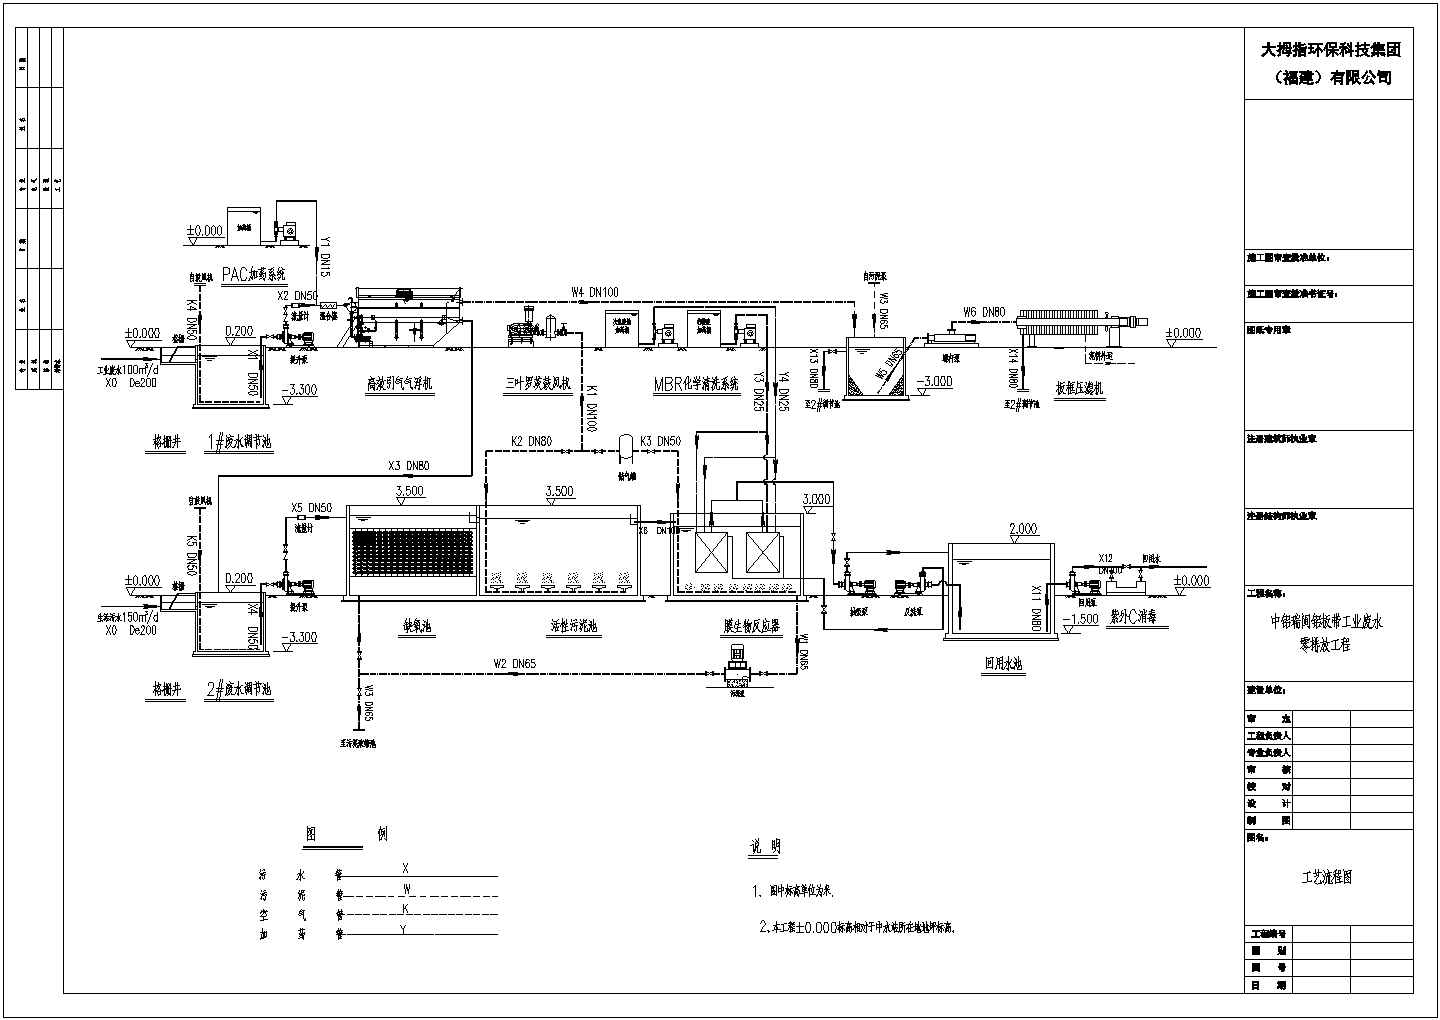 某公司MBR工艺污水处理流程图平面图